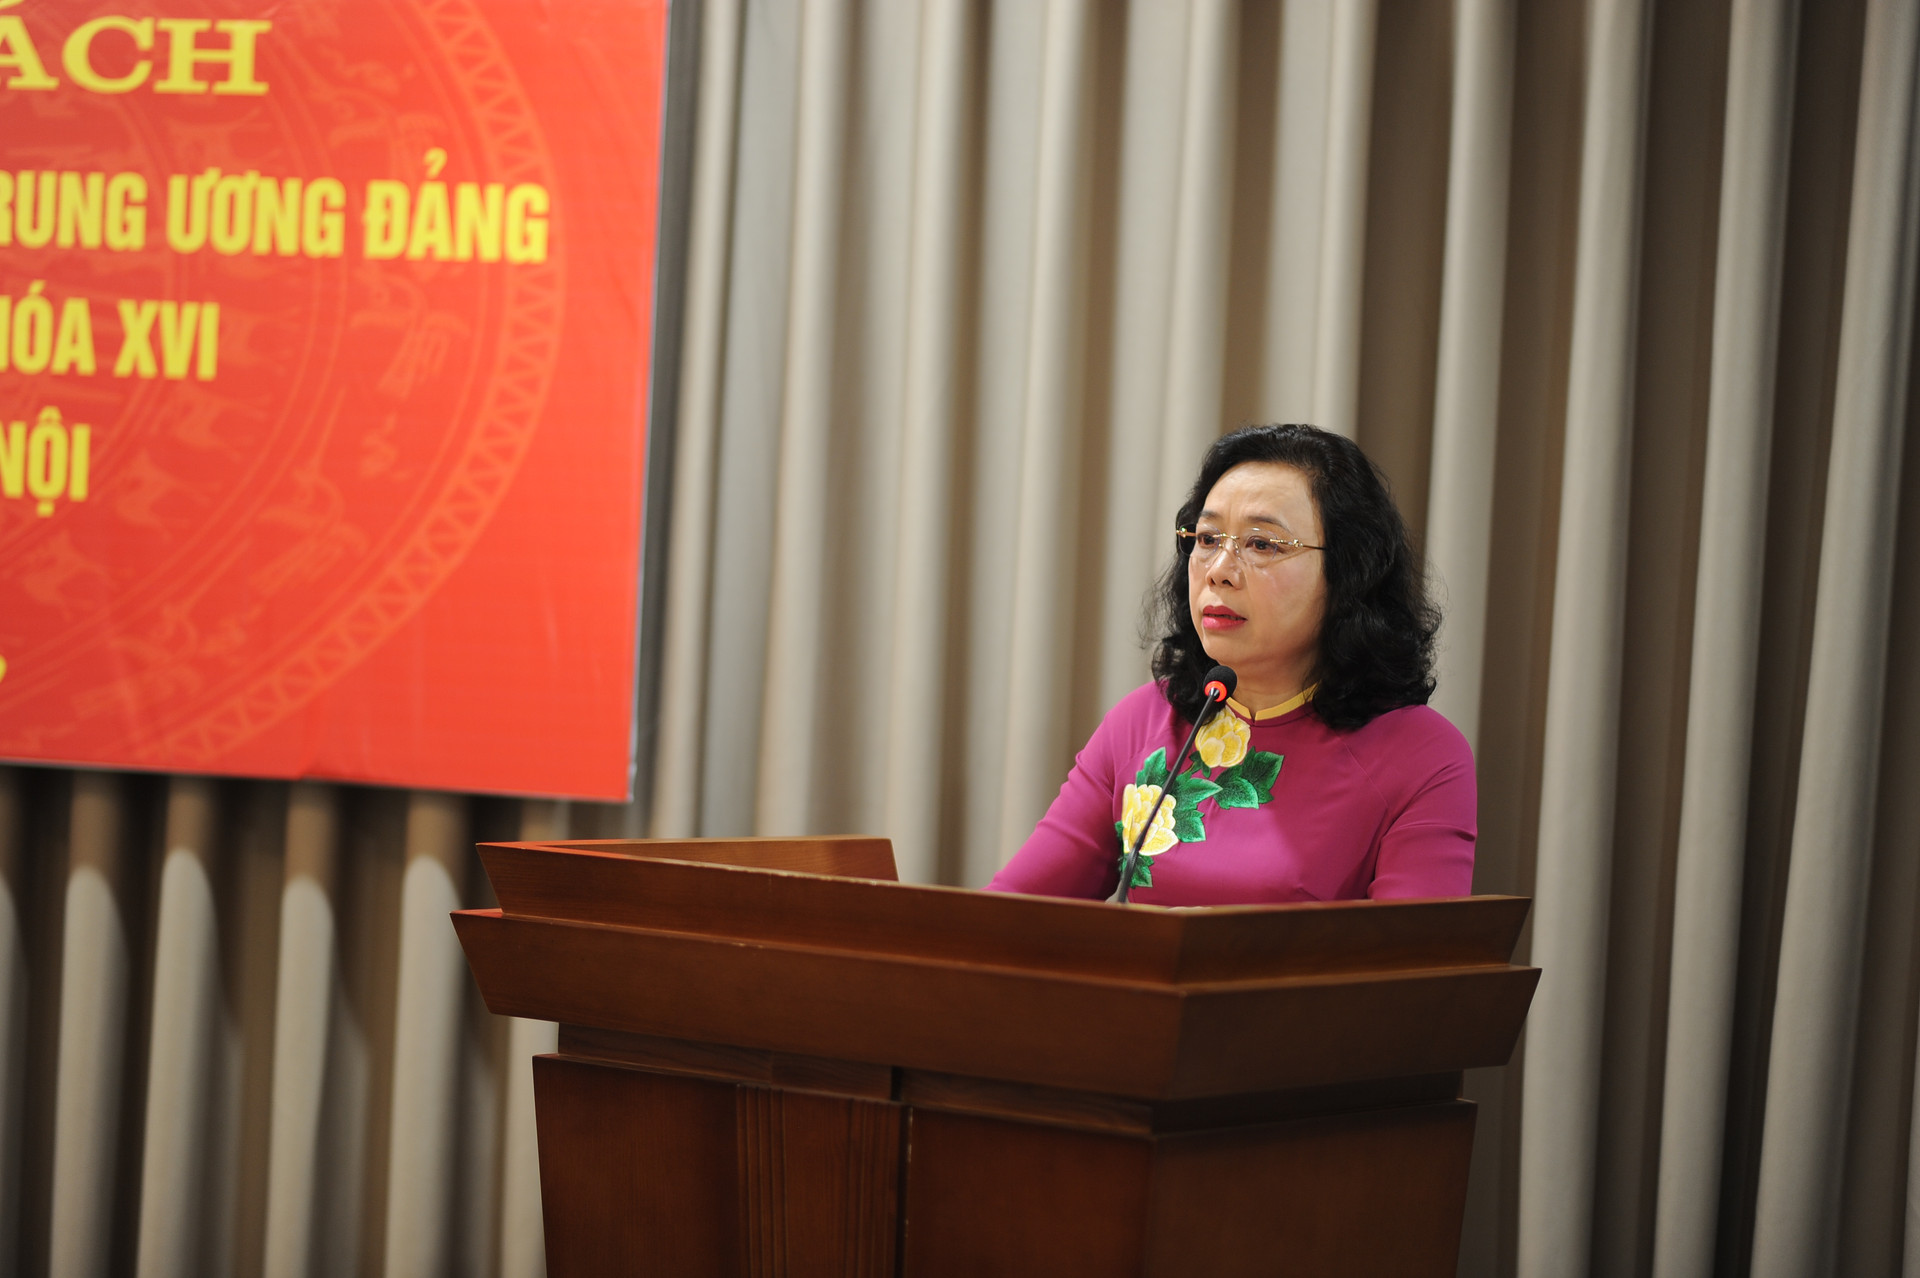 Nguyên Phó Bí thư Thường trực Thành ủy Ngô Thị Thanh Hằng gửi tặng gần 1000 cuốn sách cho thư viện Thành ủy Hà Nội